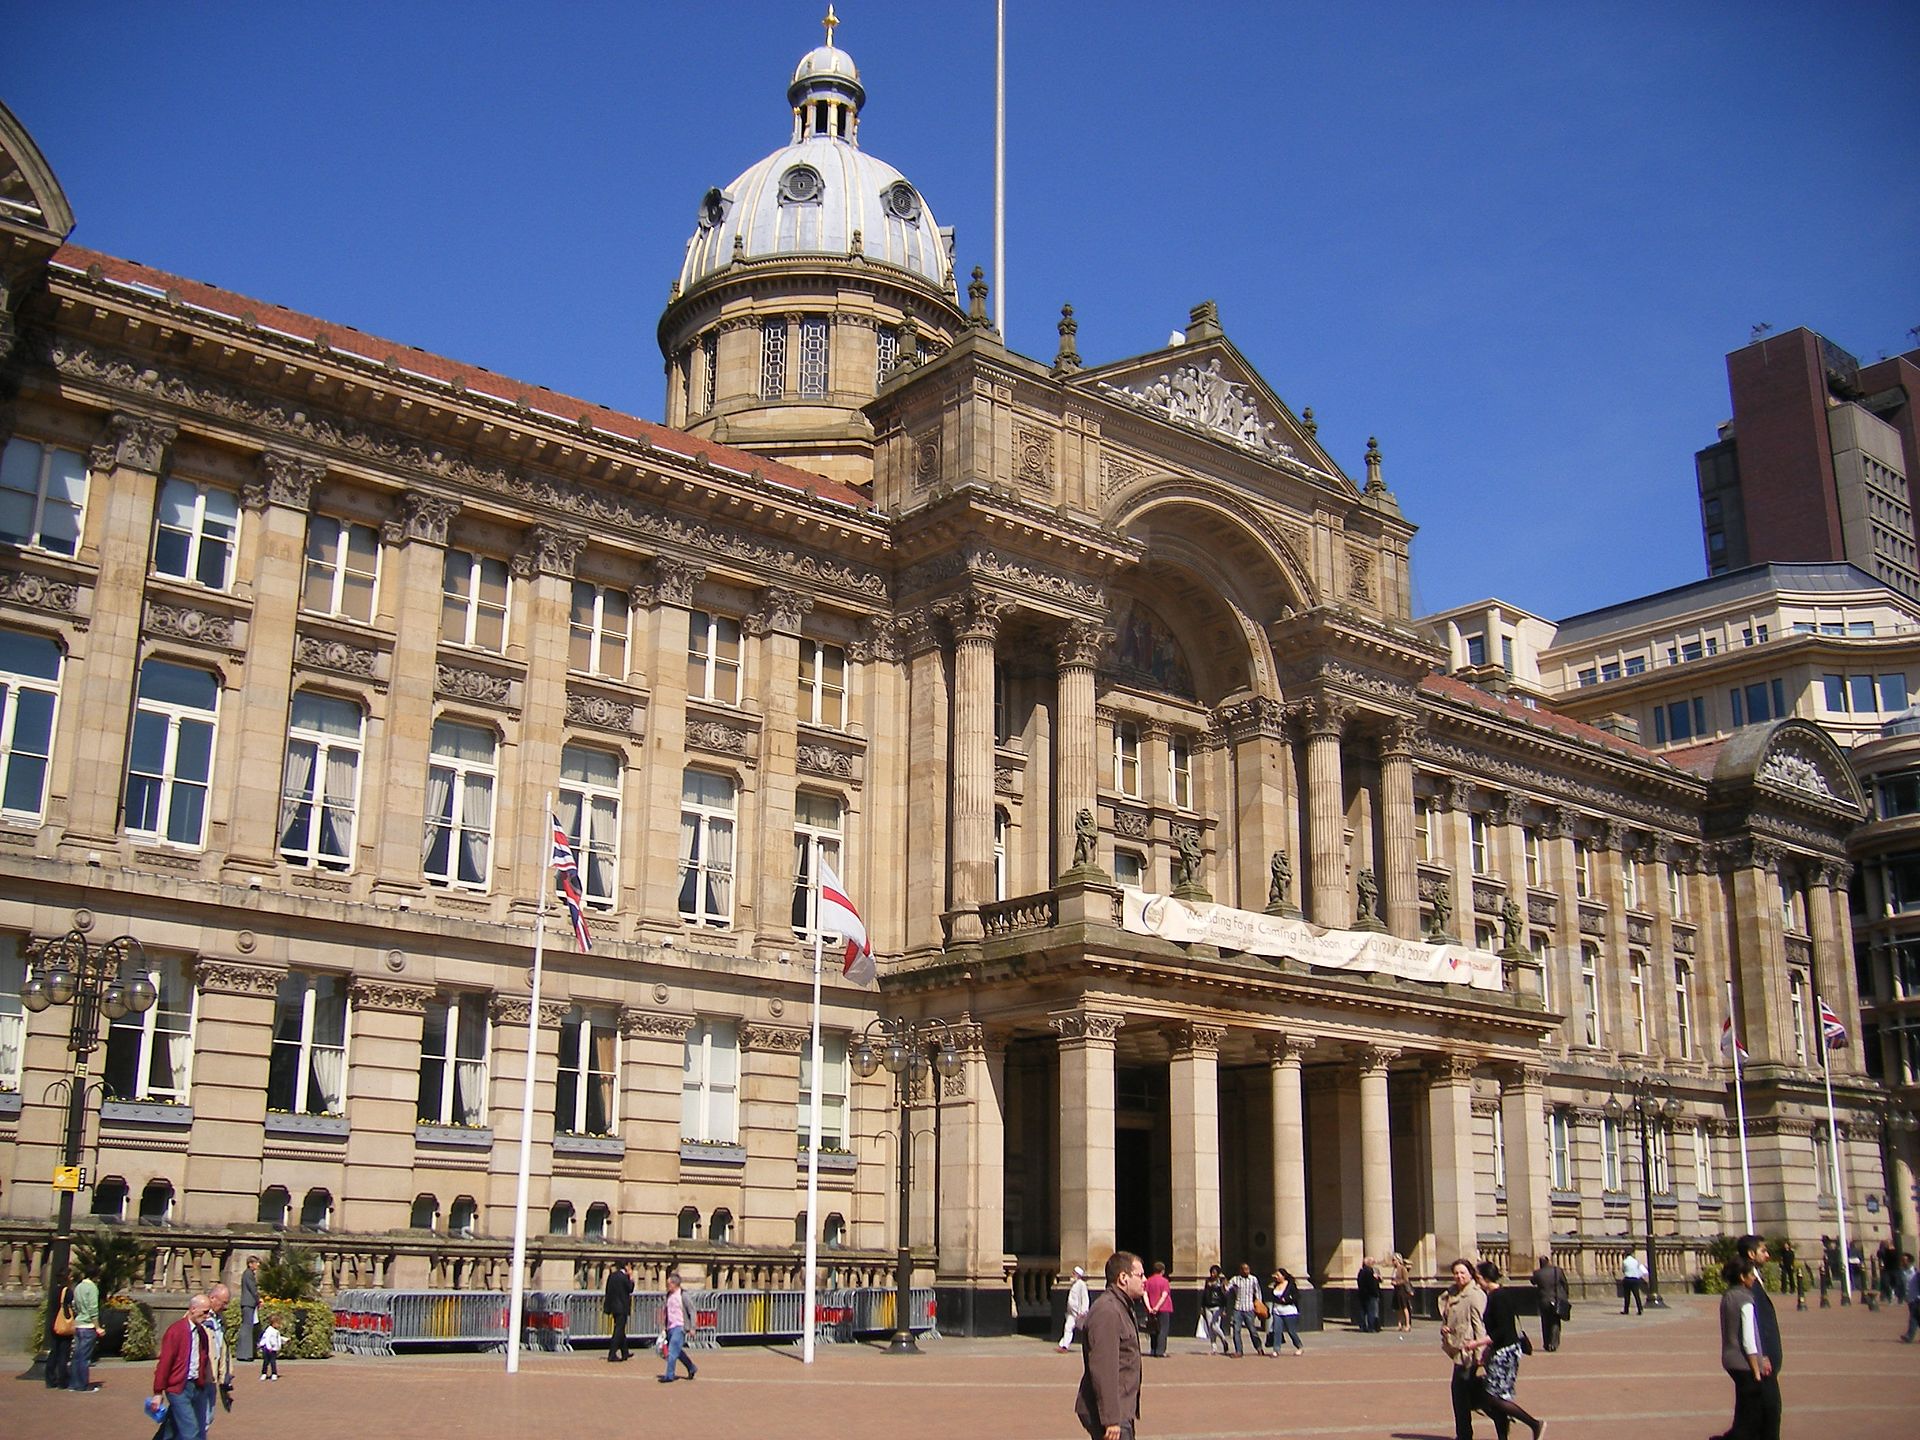 Council_House,_Birmingham_(2)  labm